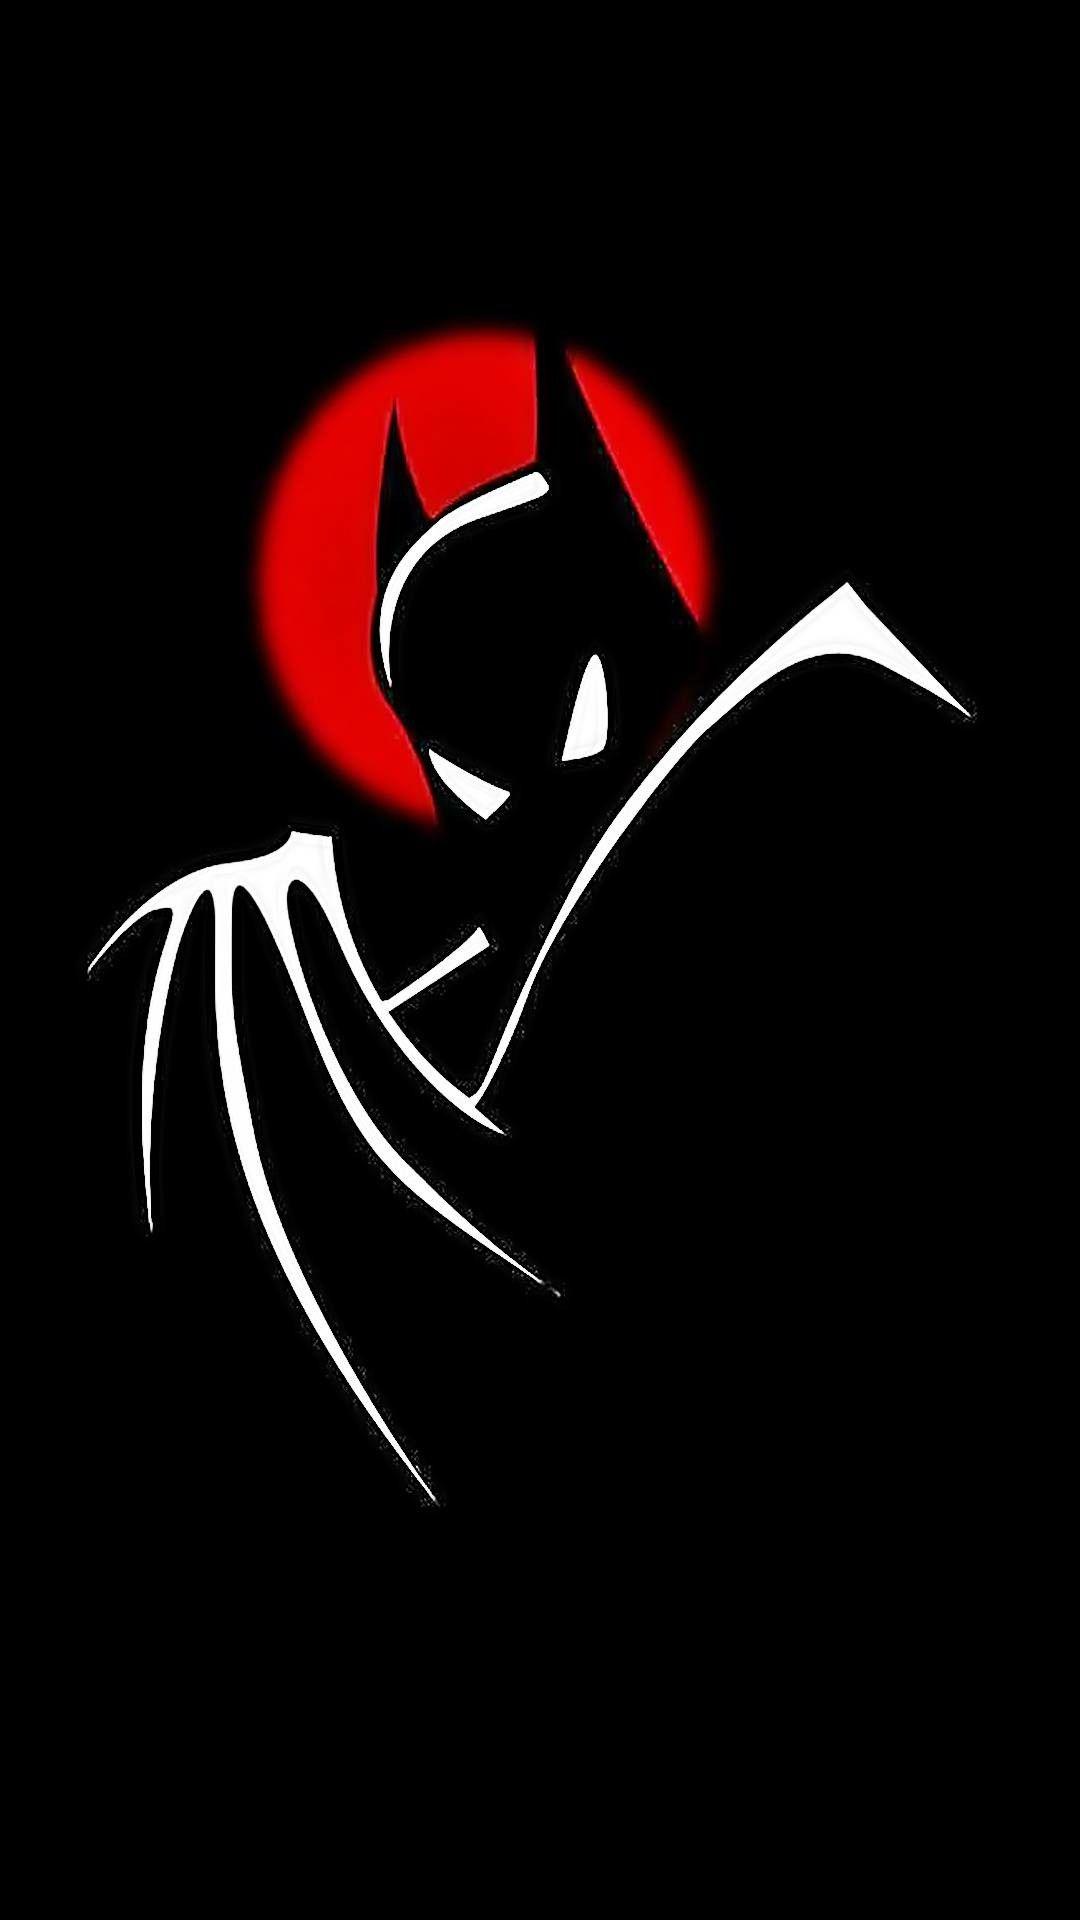 Batman the Animated Series. Batman artwork, Batman wallpaper, Batman comics